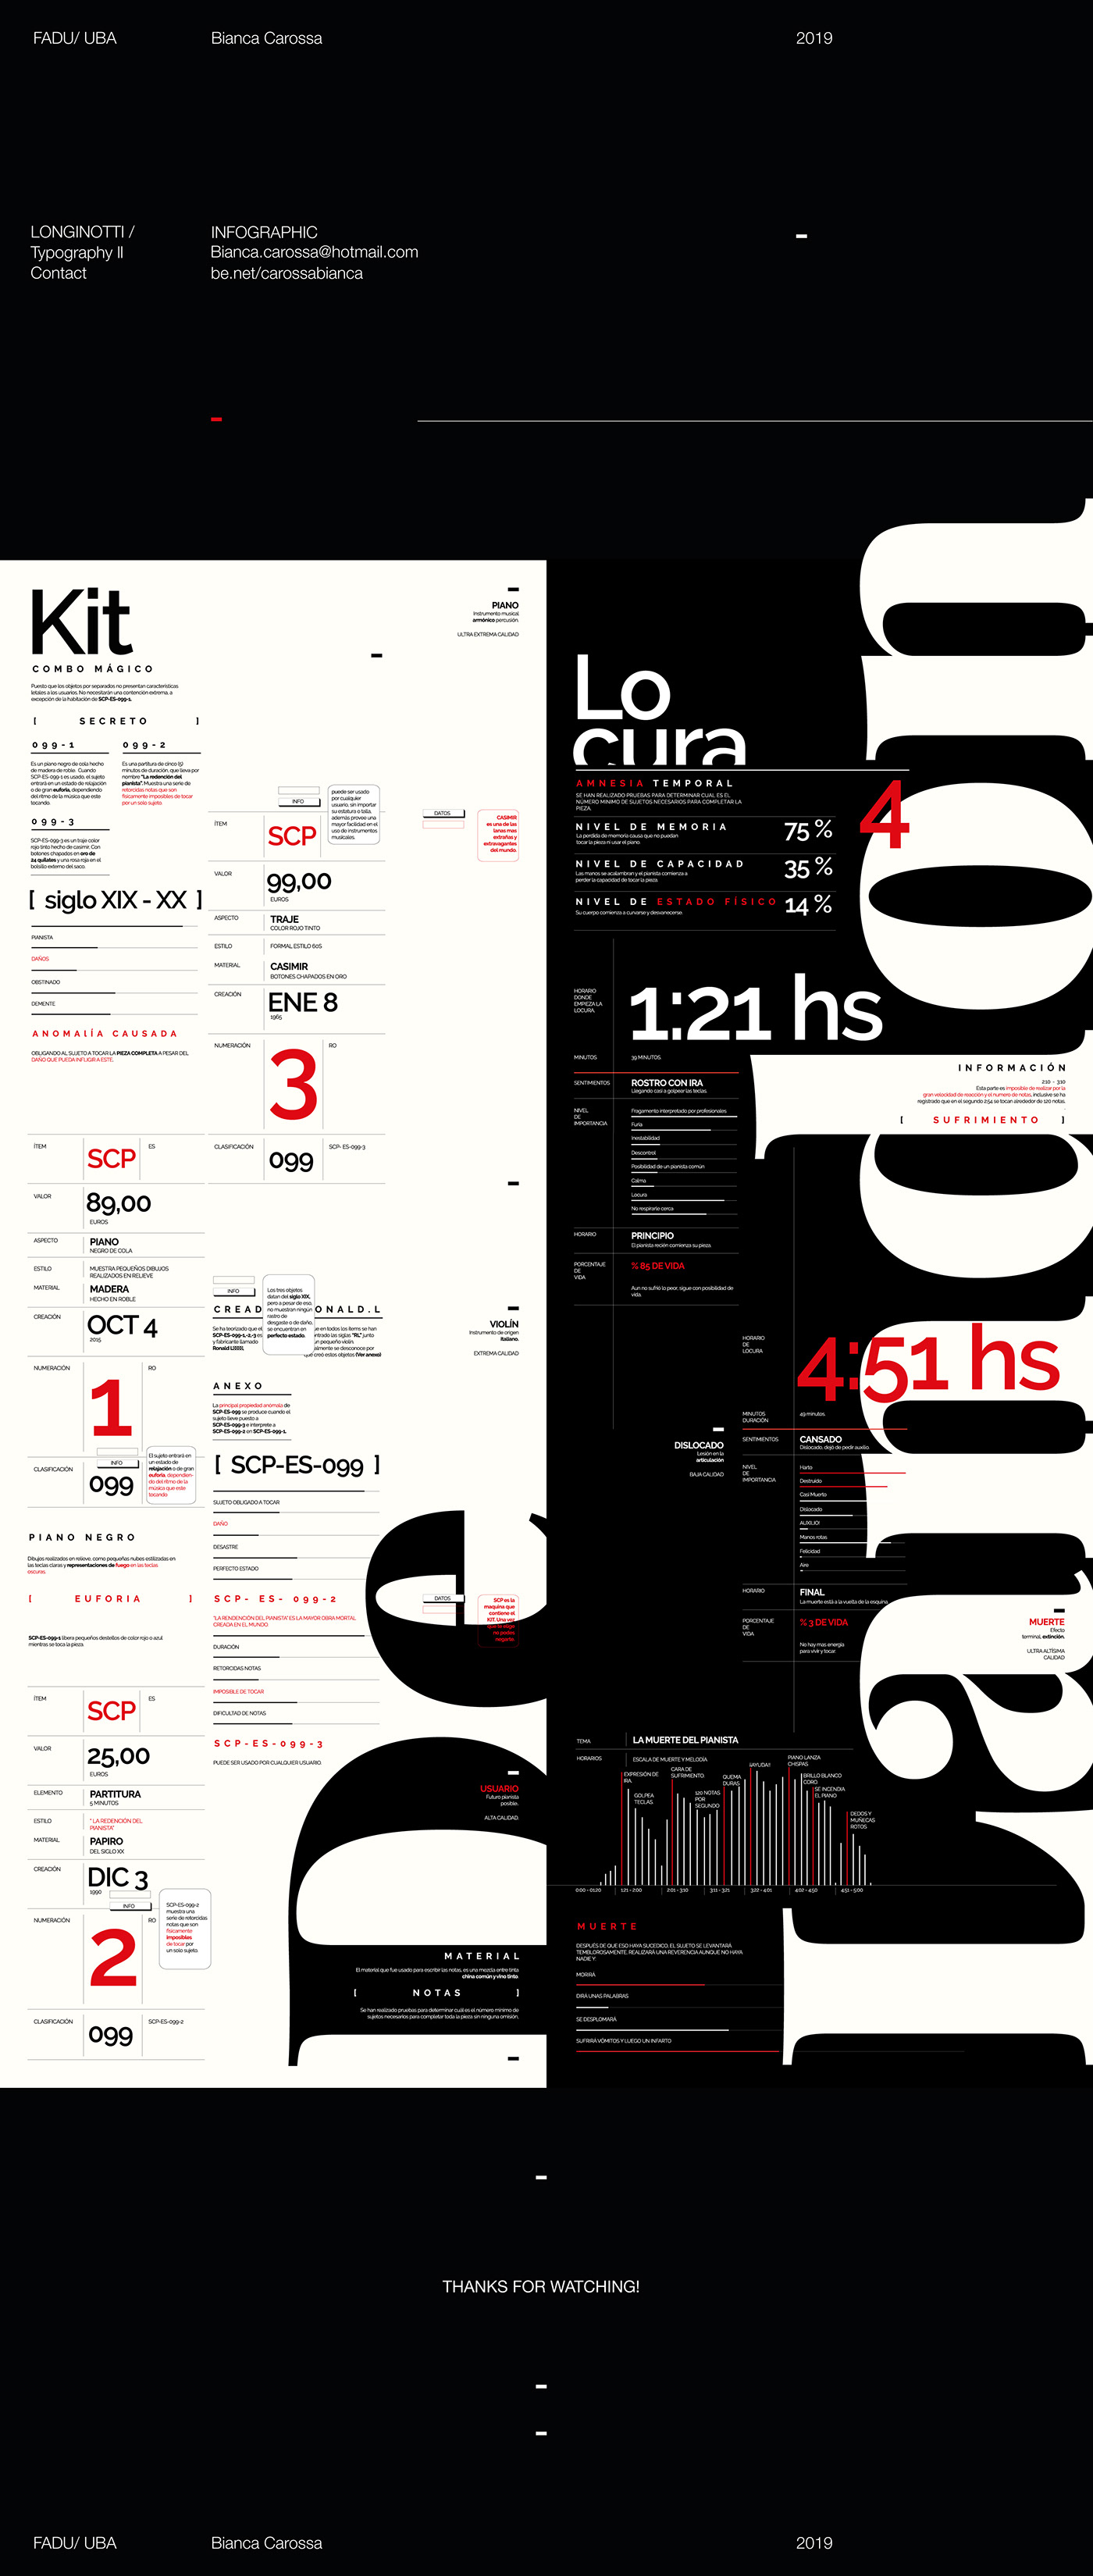 tipografia longinotti Formas textuales typo diseño grafico fadu